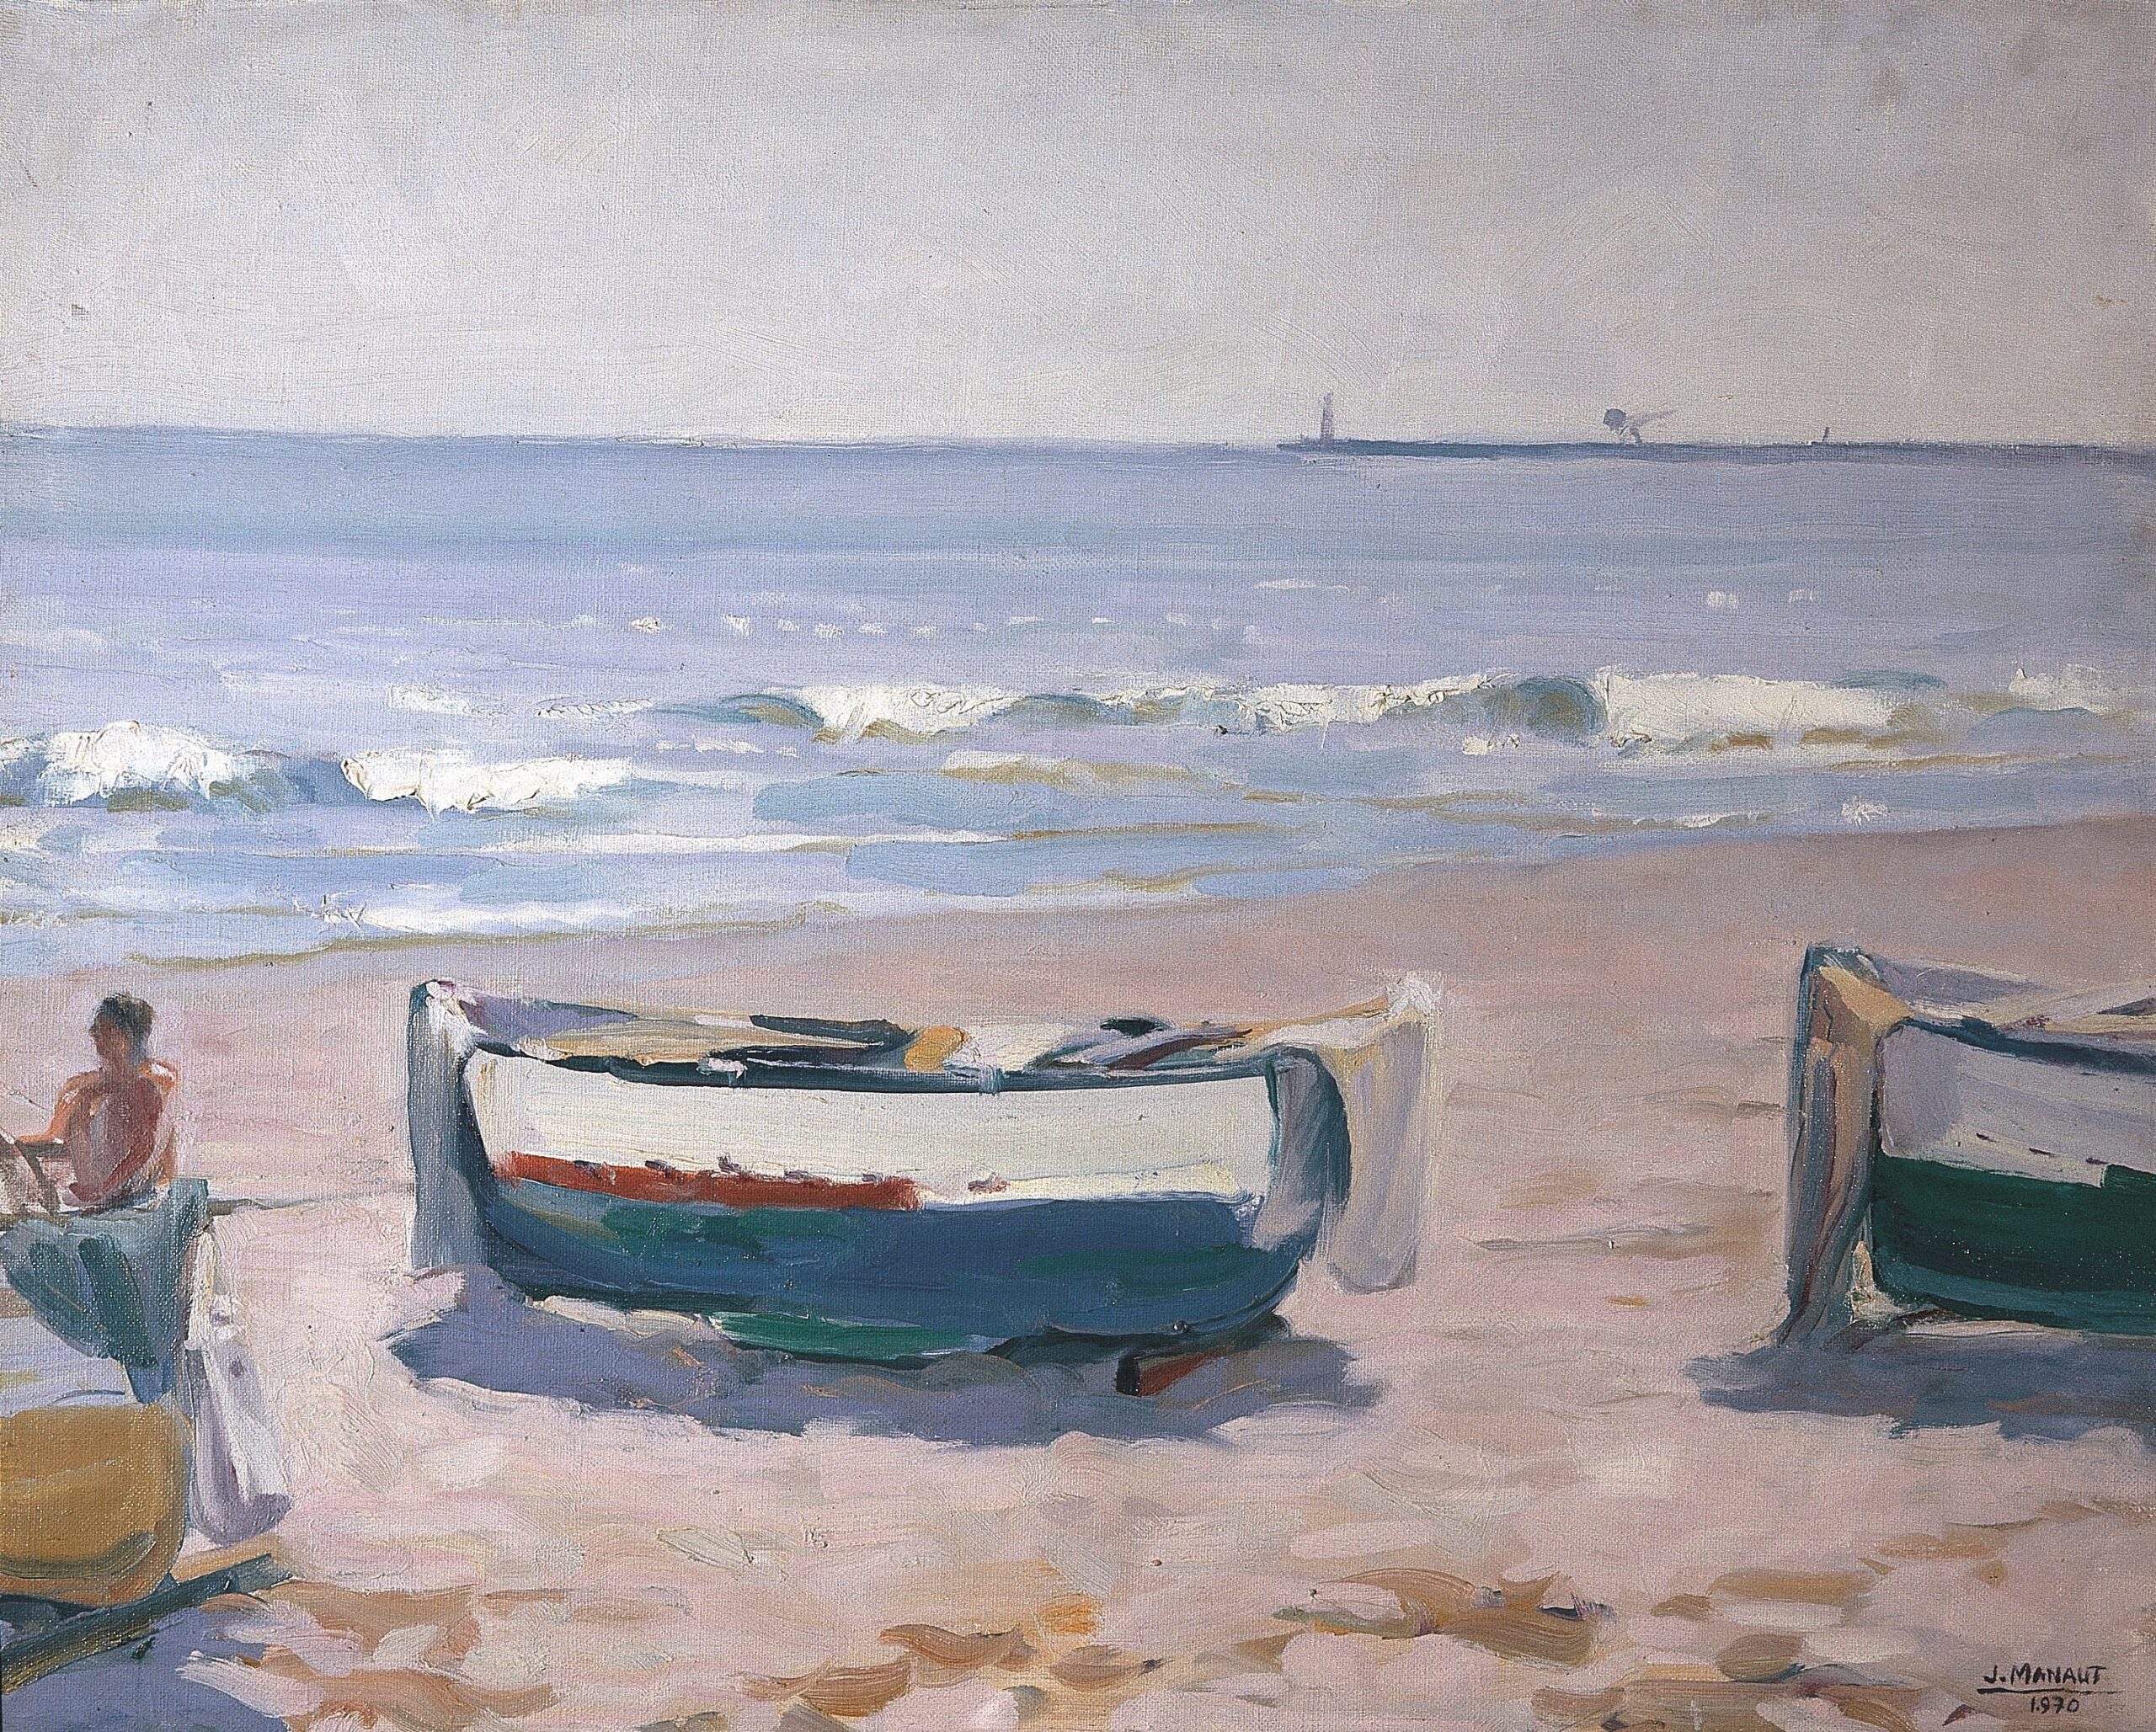 Pintura de José Manaut titulada Barcos en la playa, Valencia, 1970. Óleo sobre lienzo.